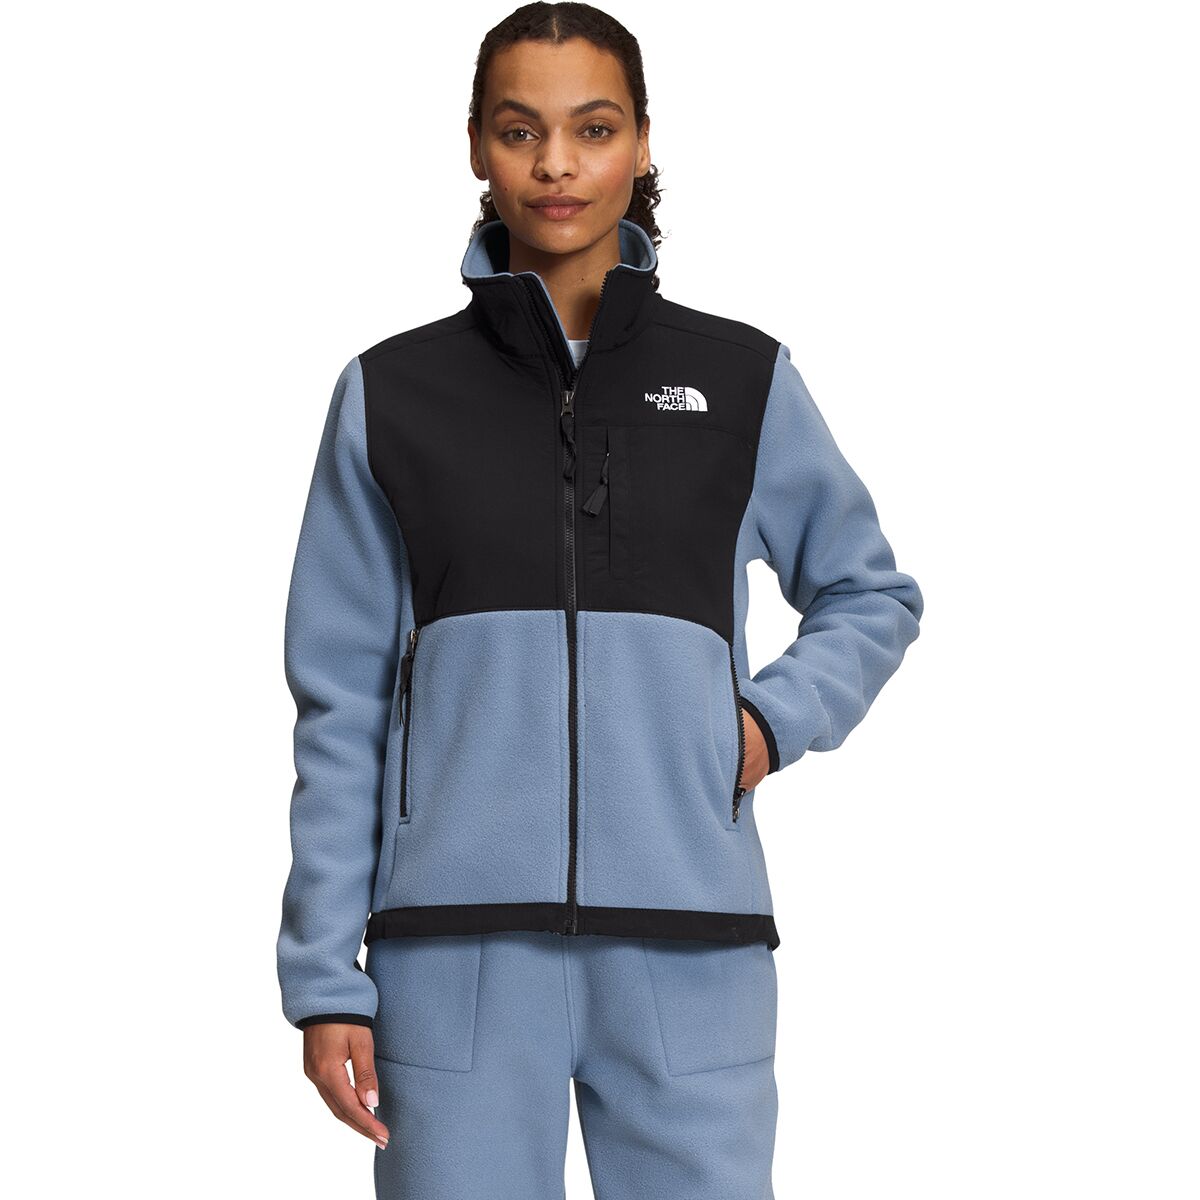 Denali 2 Fleece Jacket - Women